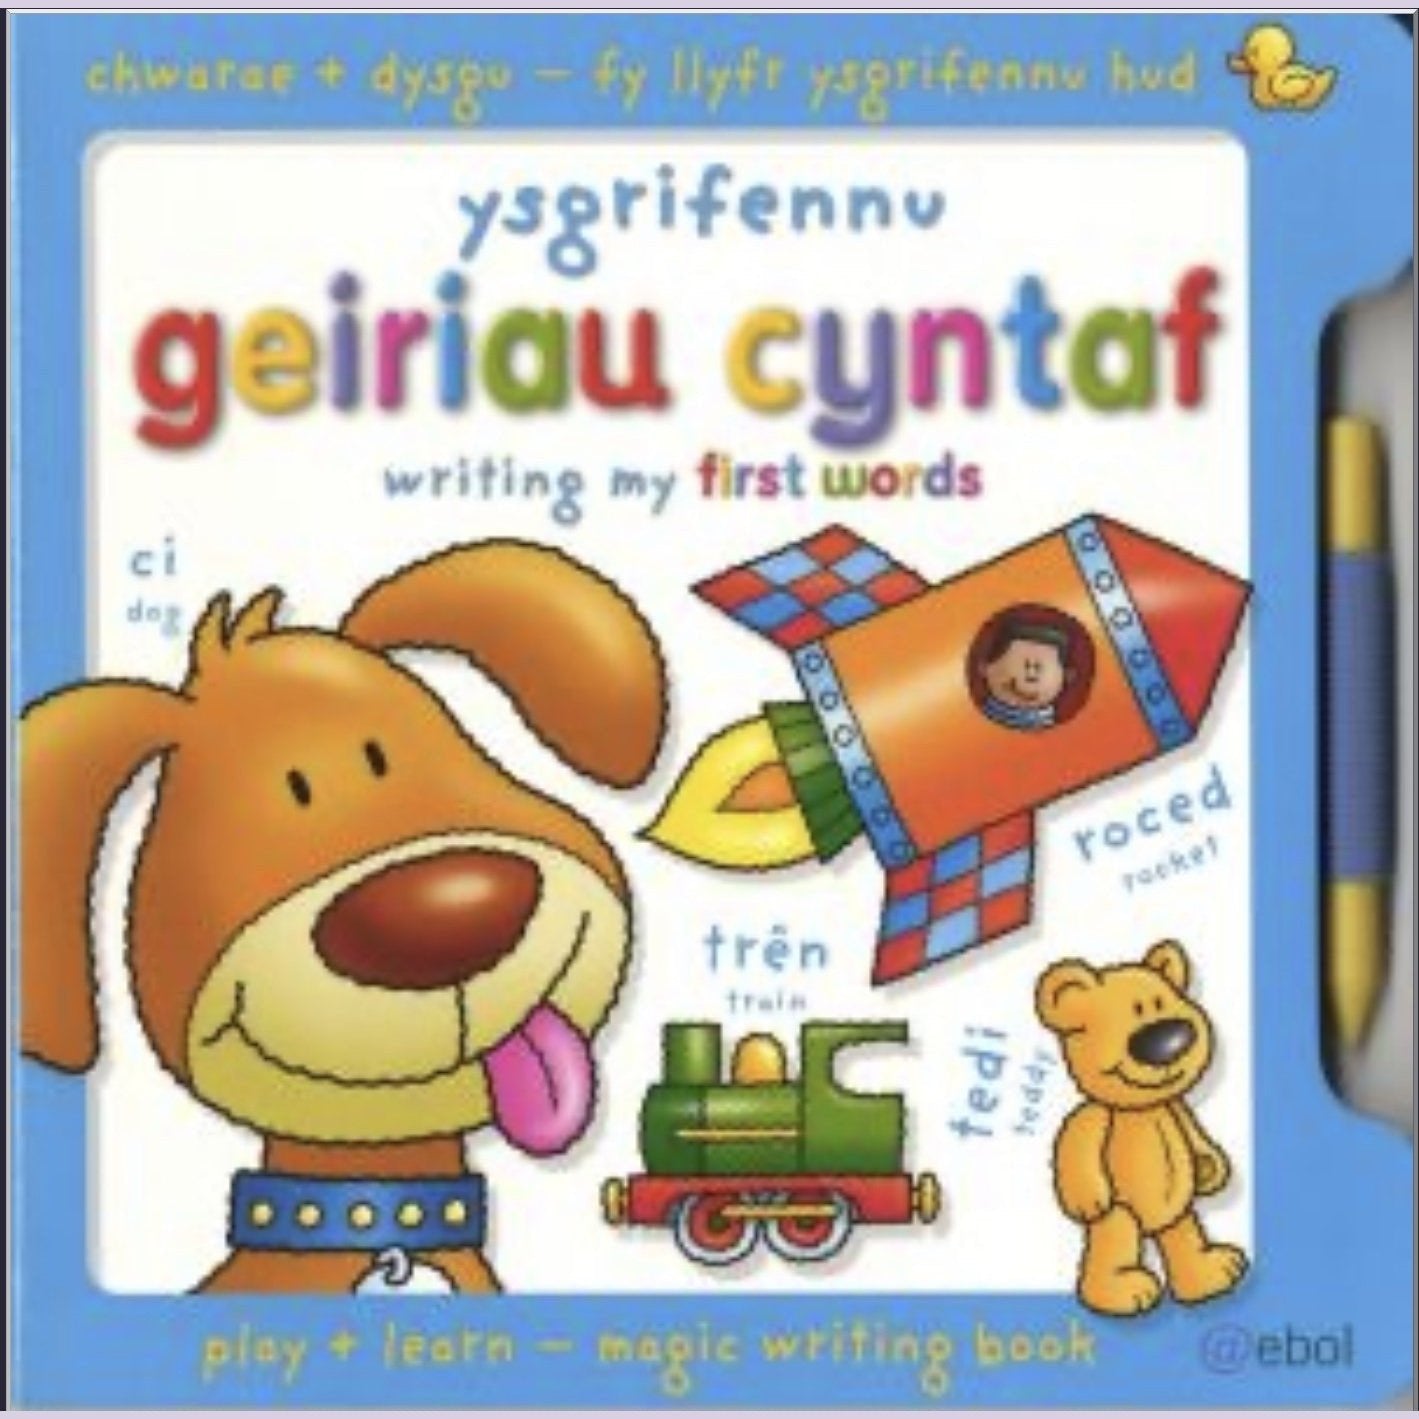 Fy Llyfr Ysgrifennu Hud/My Magic Writing Book: Ysgrifennu Geiriau Cyntaf/Writing My First Words - Siop y Pethe